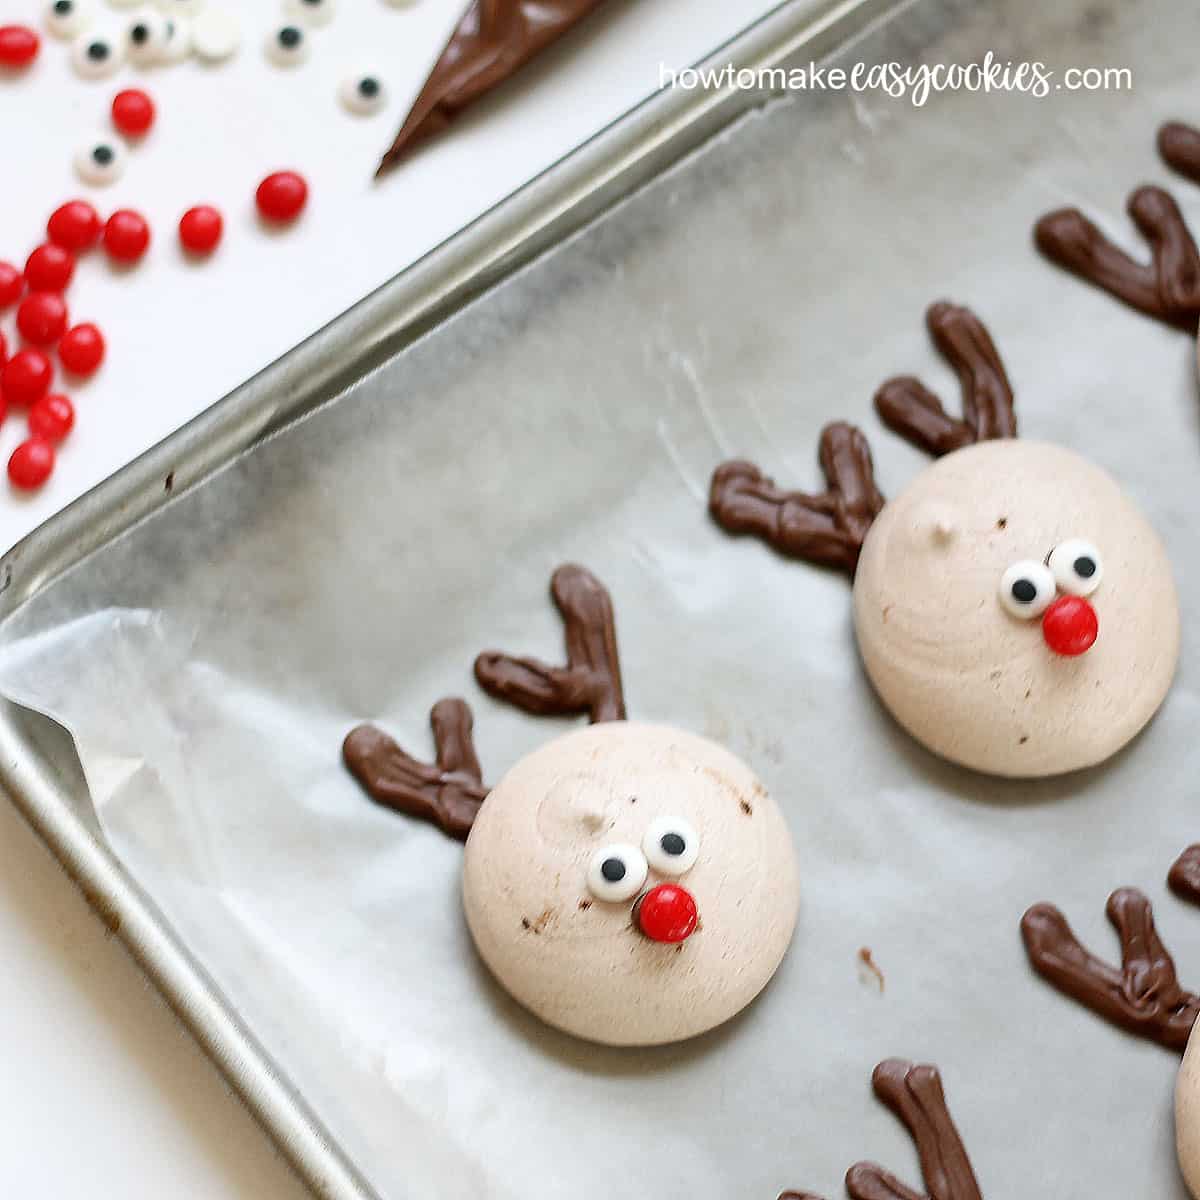 Decorating peppermint chocolate meringue cookies as Rudolph reindeer